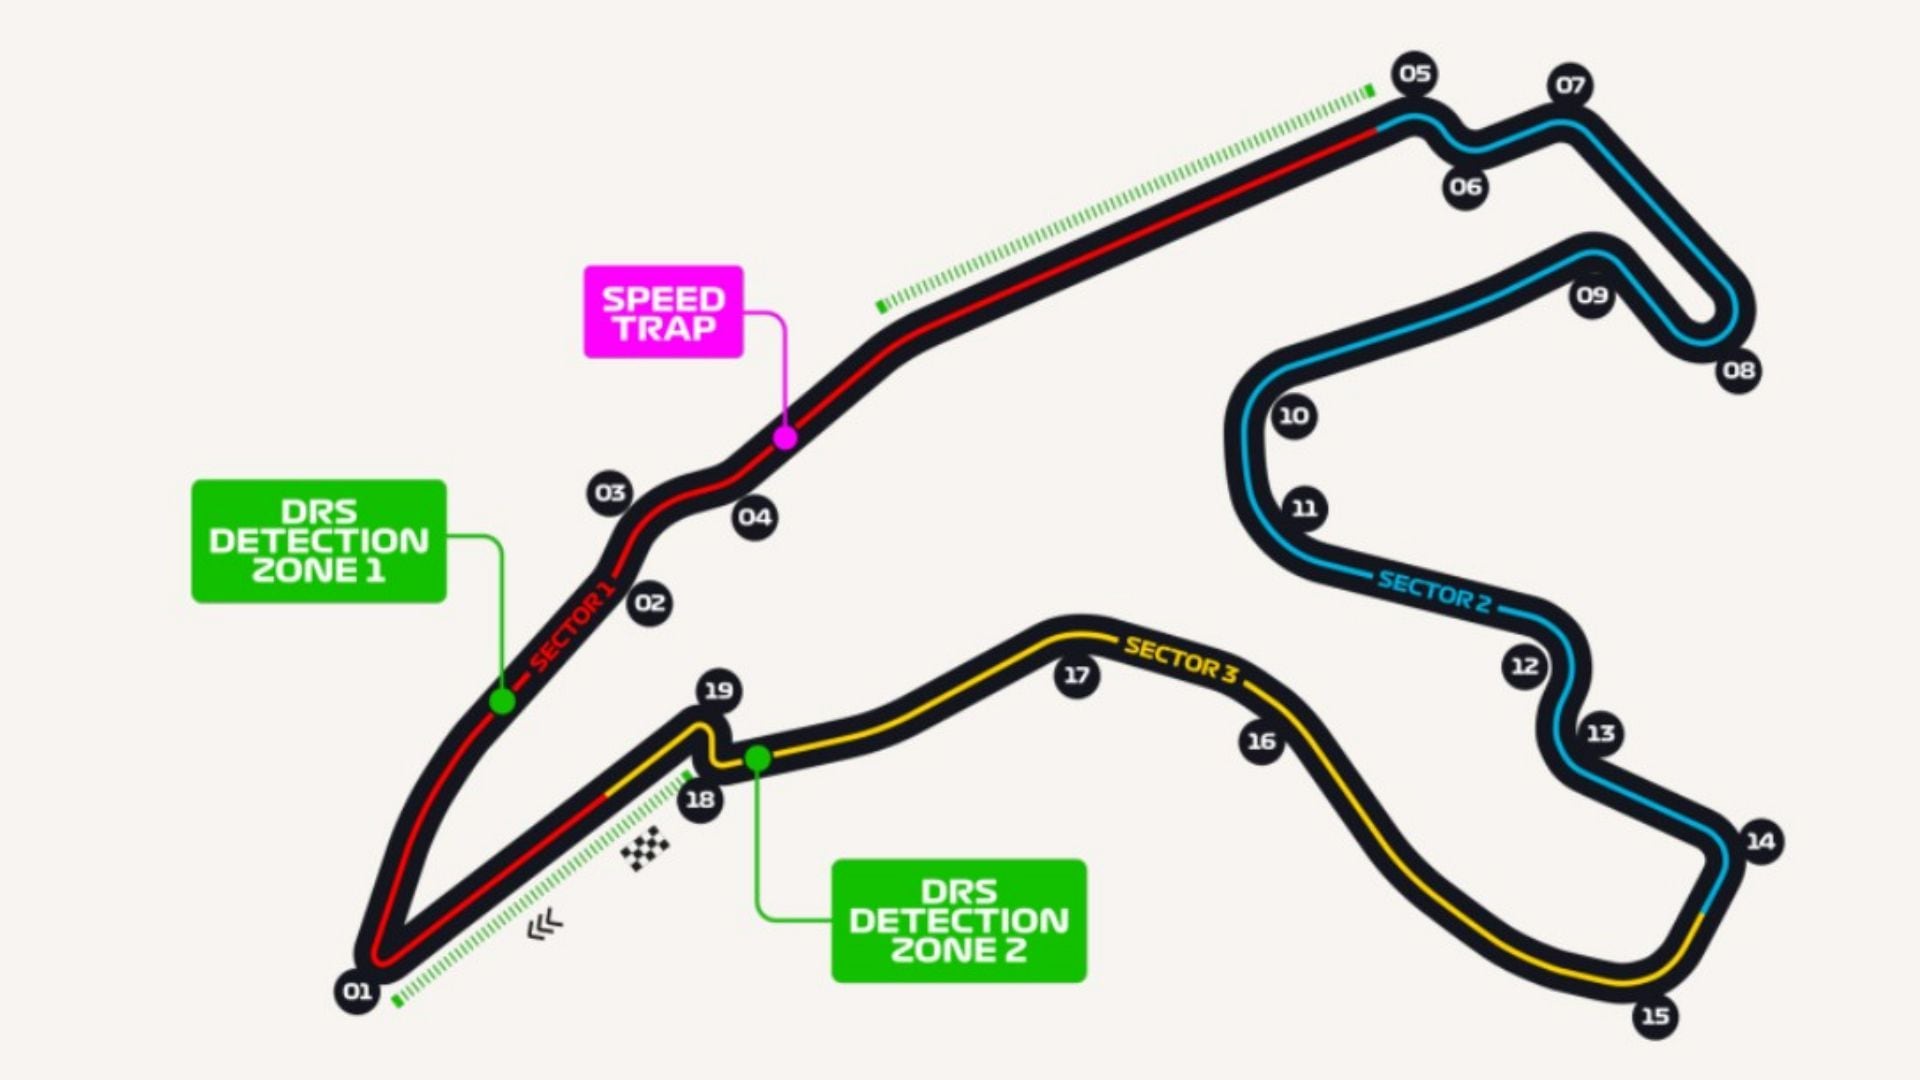 El circuito de Spa es uno de los más esperados de la Fórmula 1. (Foto: F1)